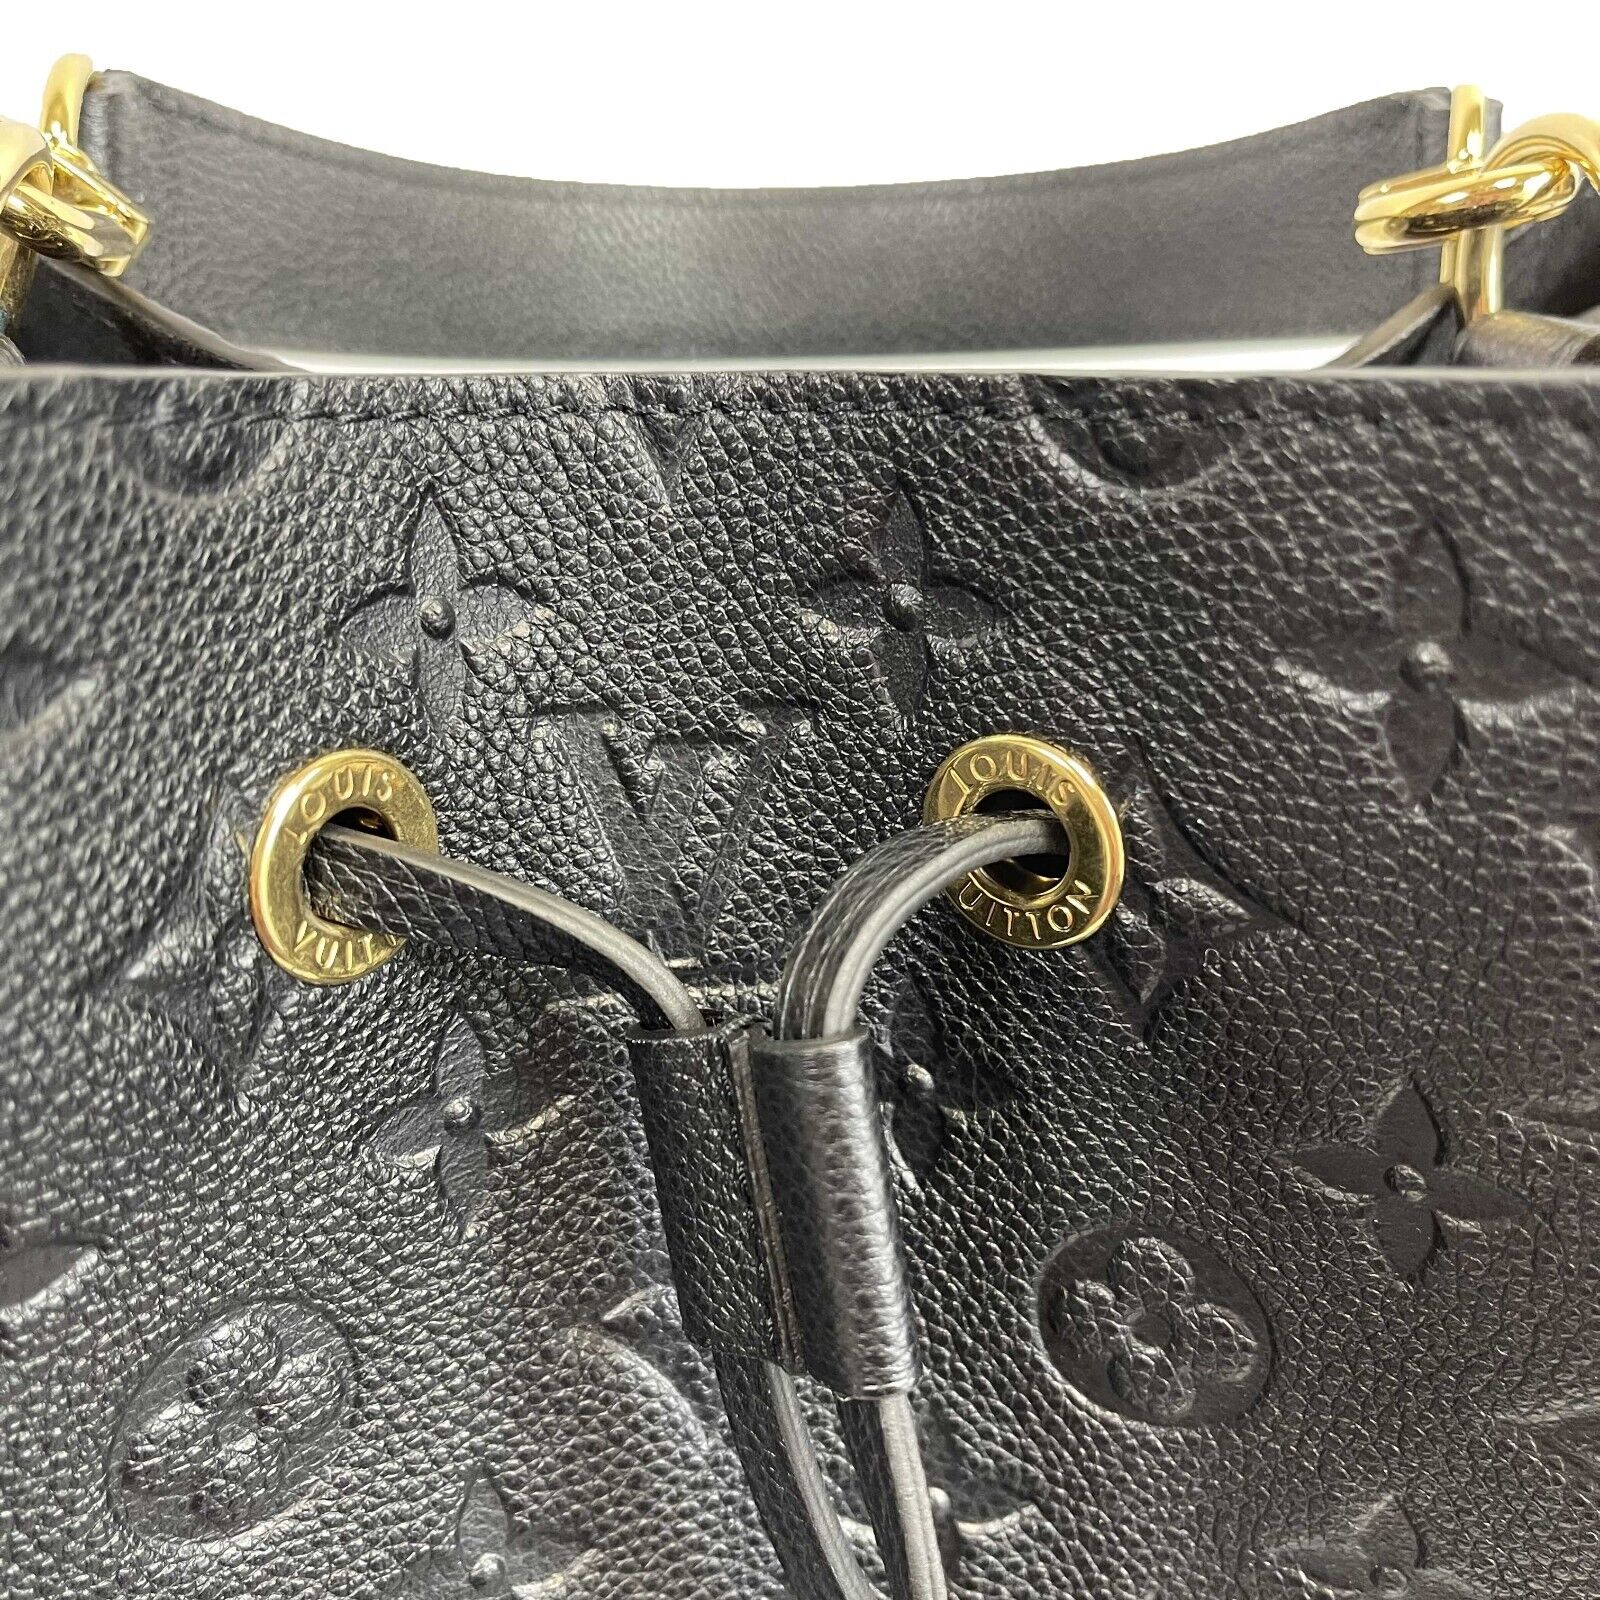 Neonoe MM Shoulder bag in Monogram Empreinte leather, Gold Hardware